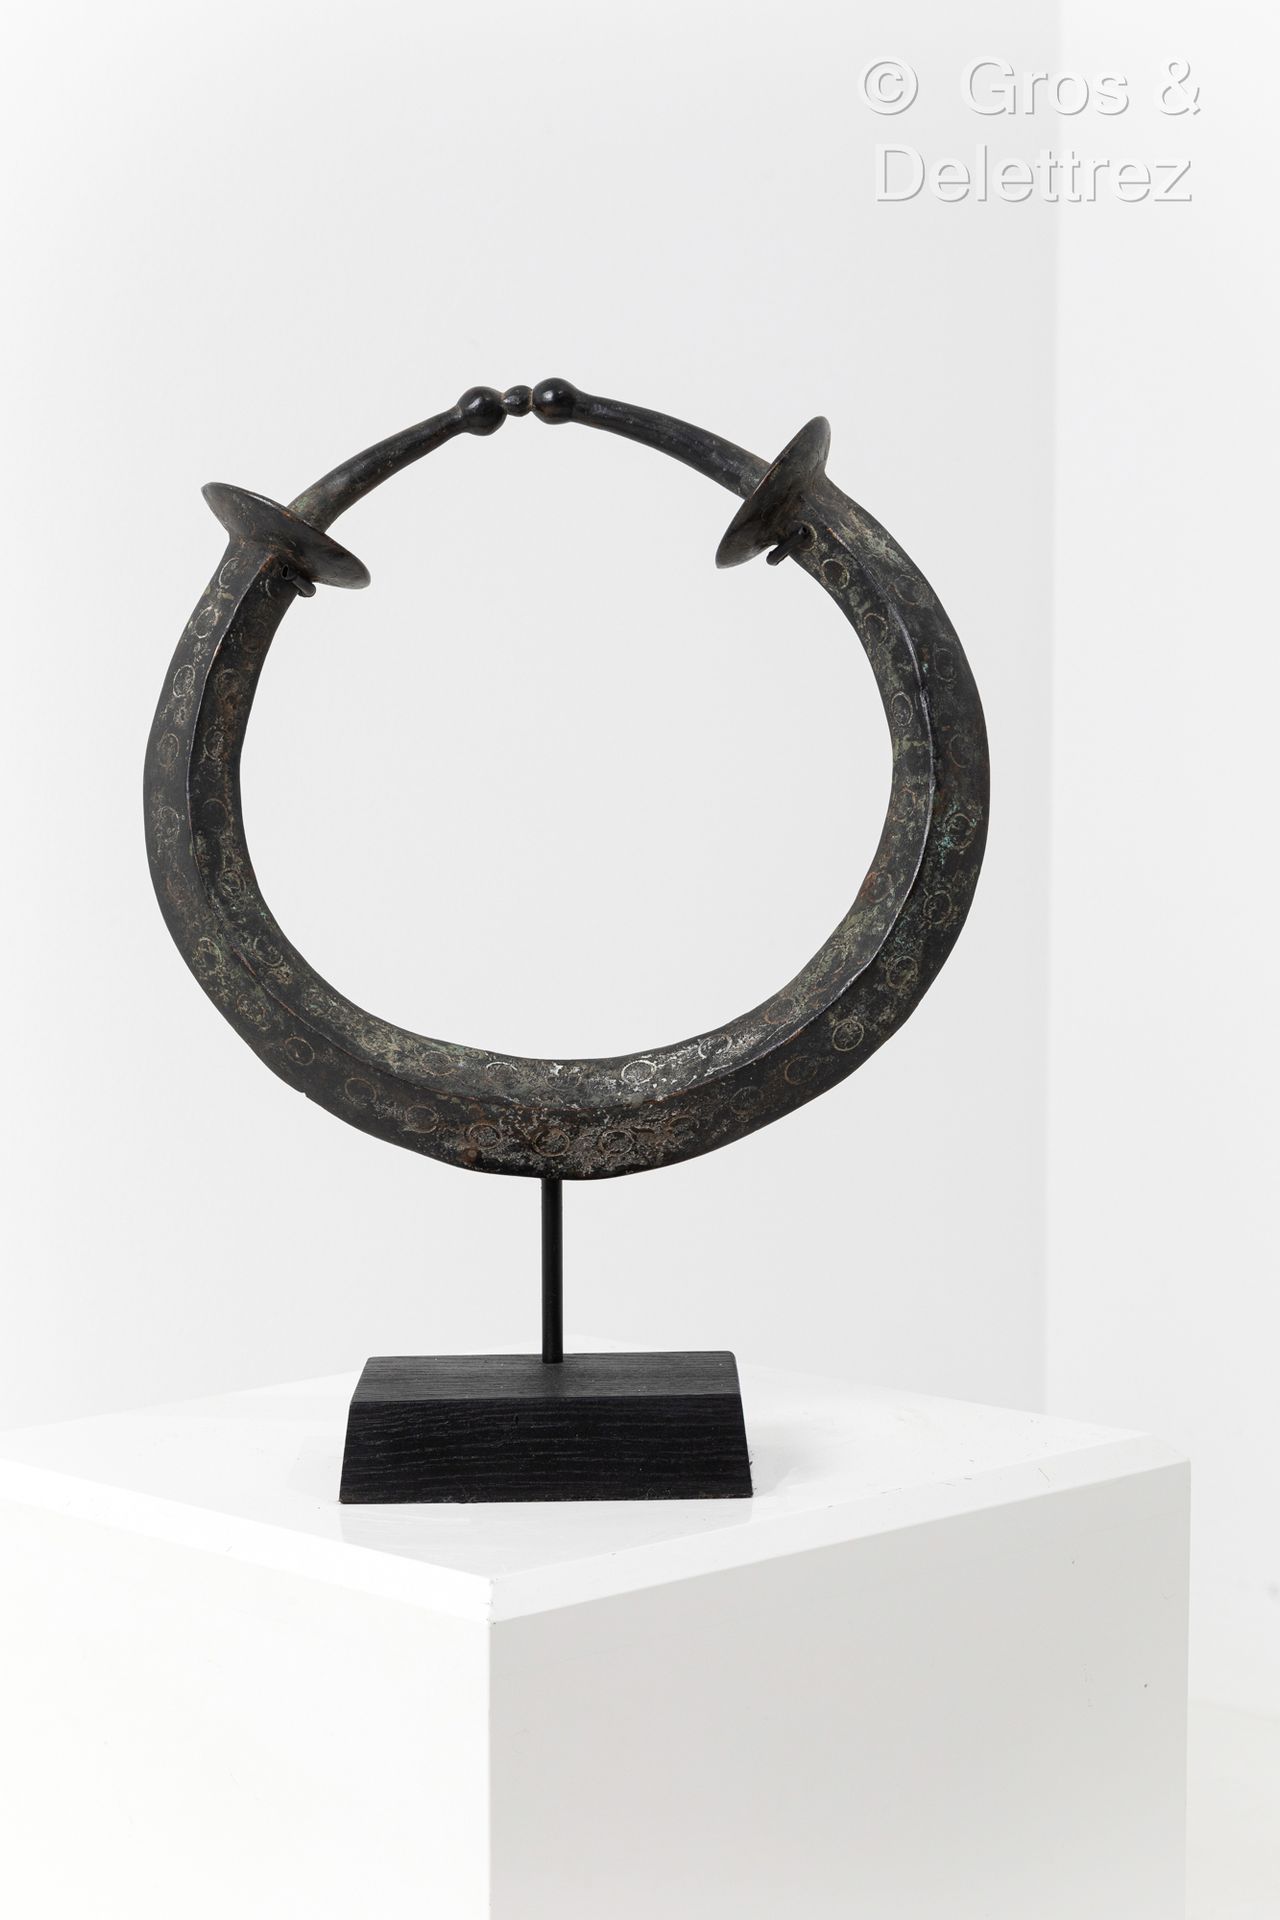 Null *Torque.
Yoruba人，尼日利亚。
19世纪或更早。
青铜器。
直径：32厘米